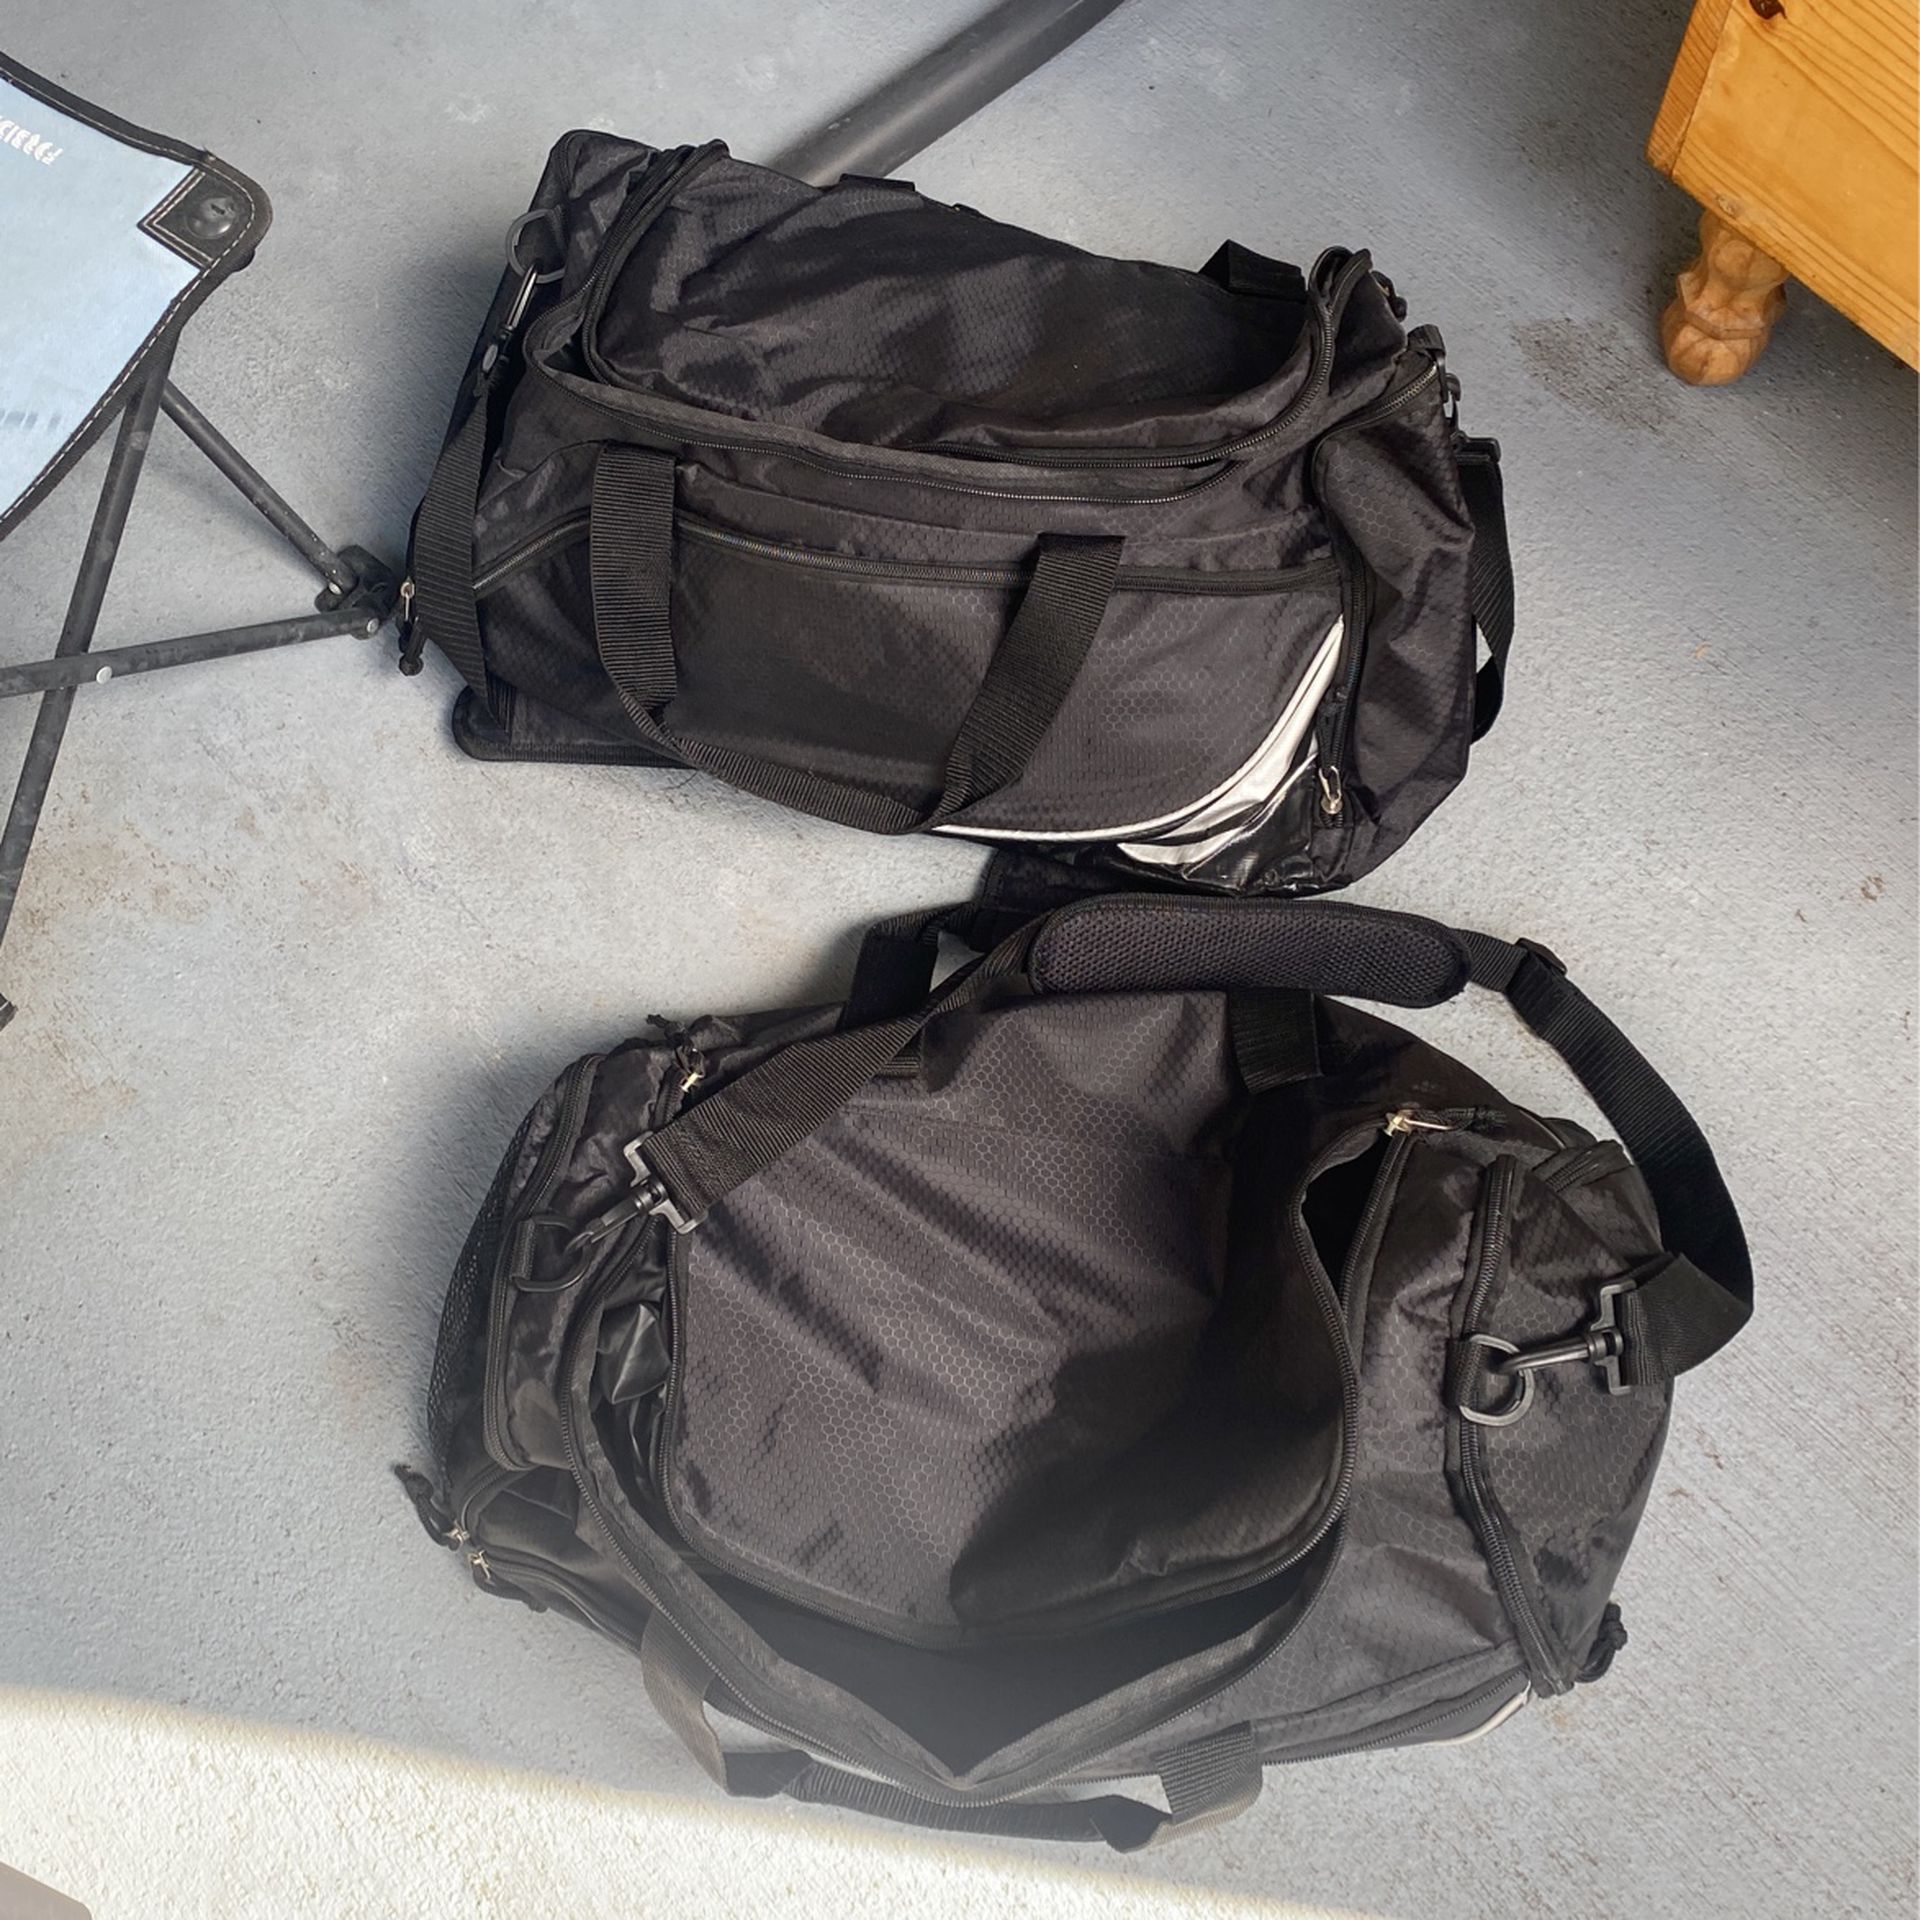 2 Medium Duffle Bags